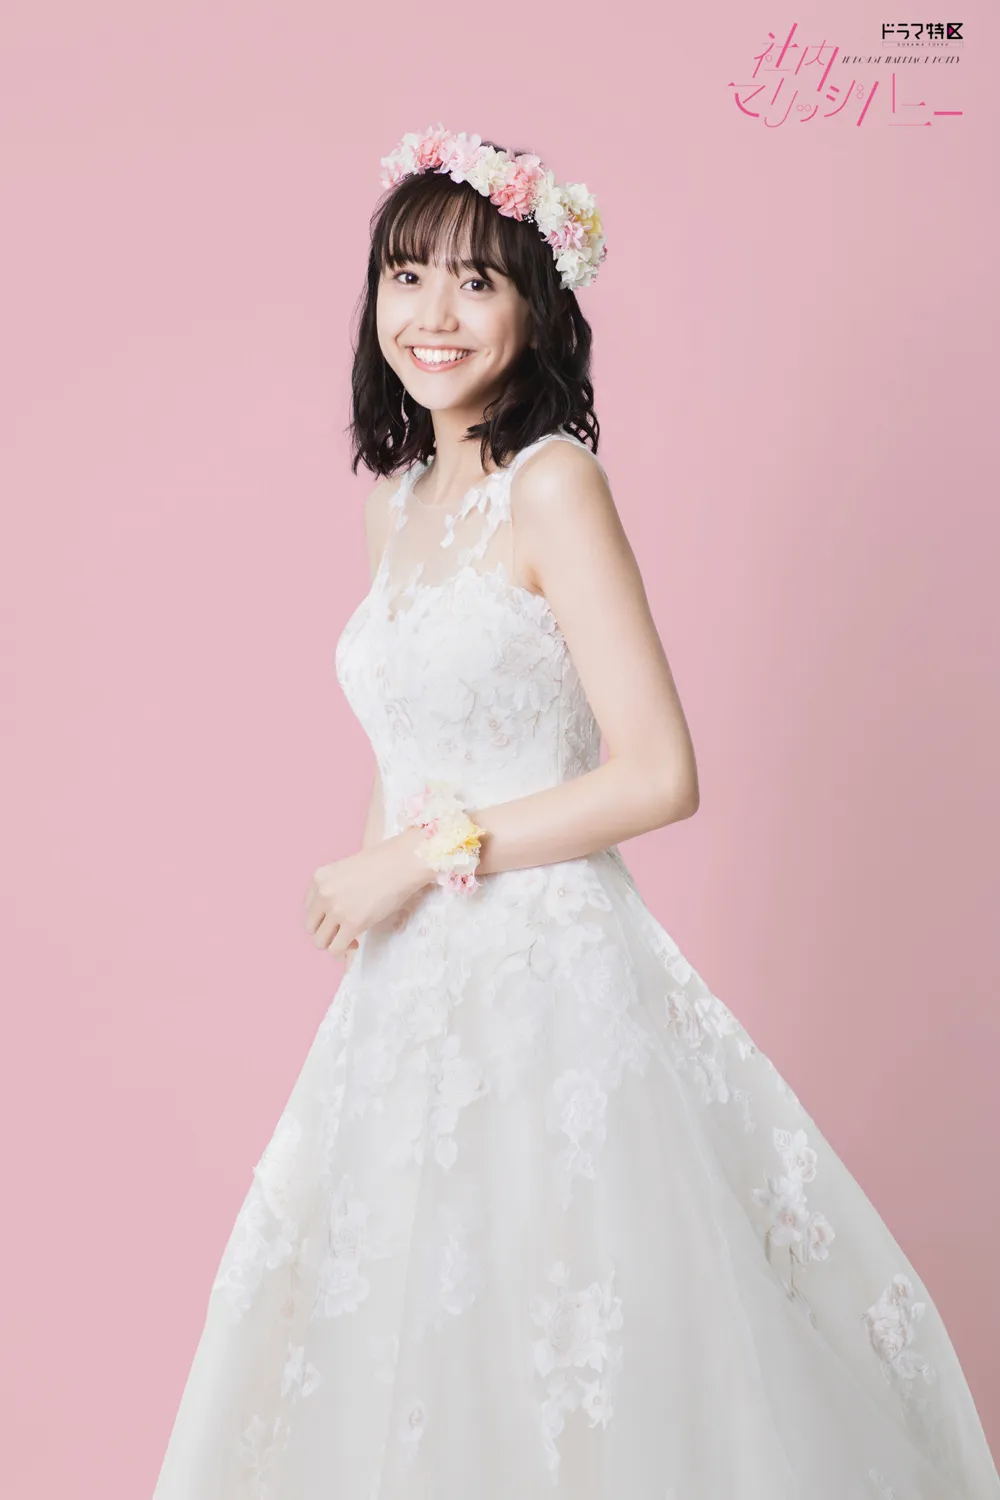 【写真を見る】松井愛莉のウエディングドレス姿が公開された